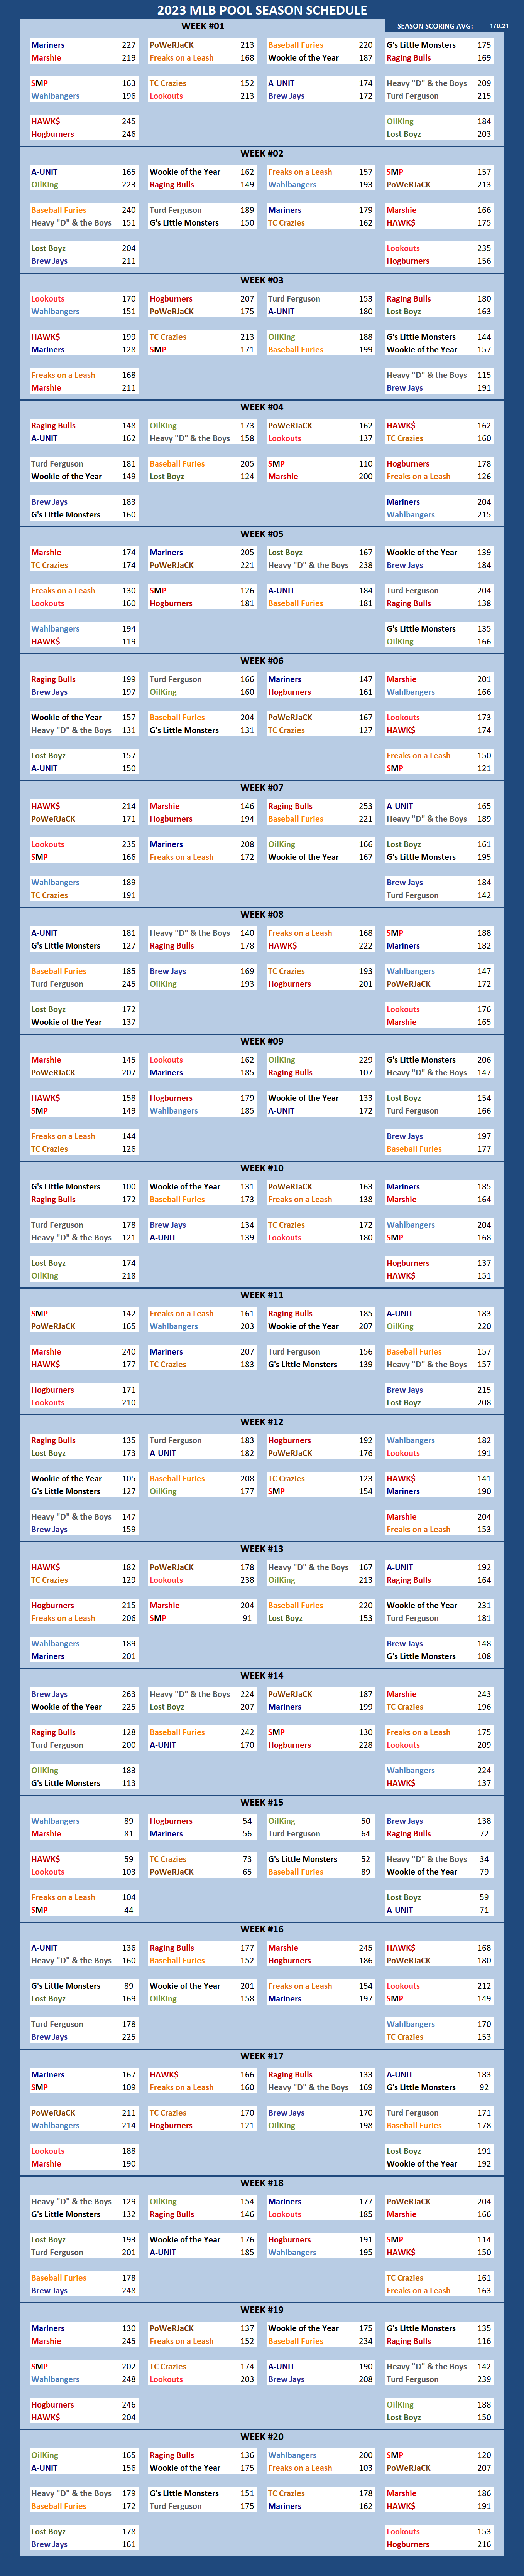 2023 Major League Baseball Pool Season Schedule